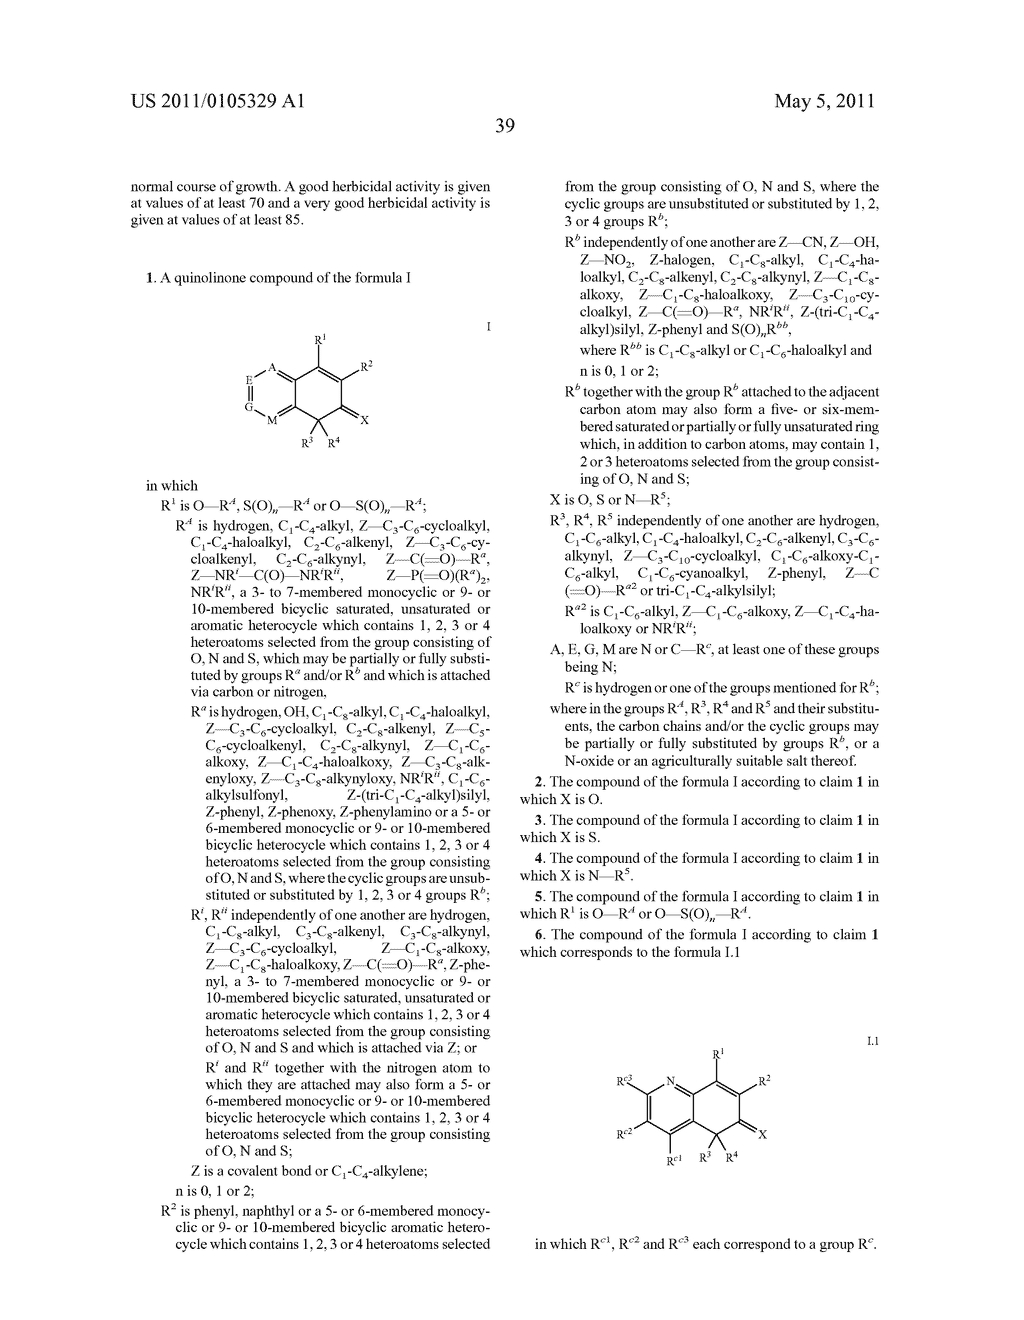 Substituted Quinolinones Having Herbicidal Action - diagram, schematic, and image 40